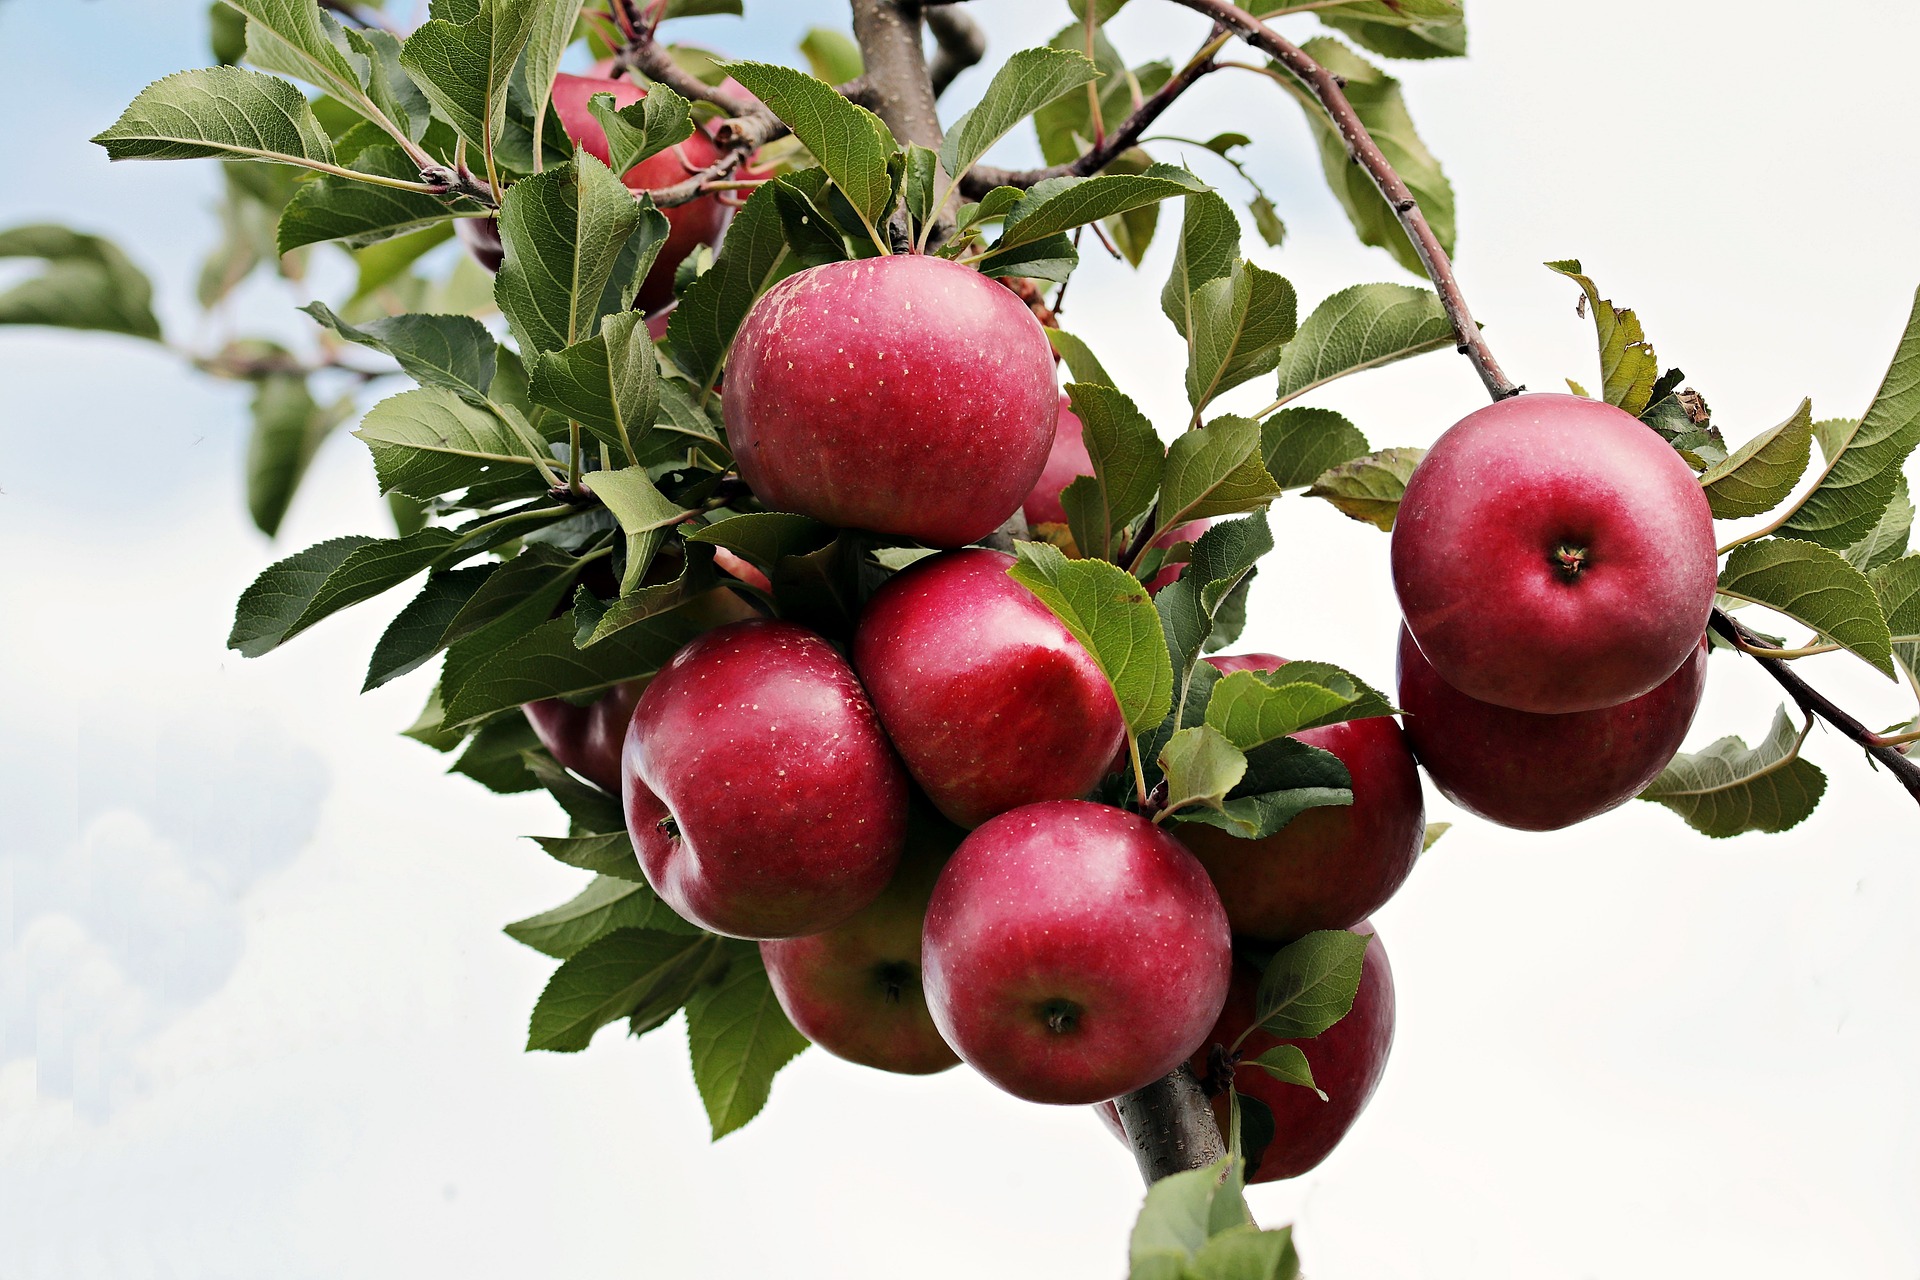 Washington’s apple crop revised downwards